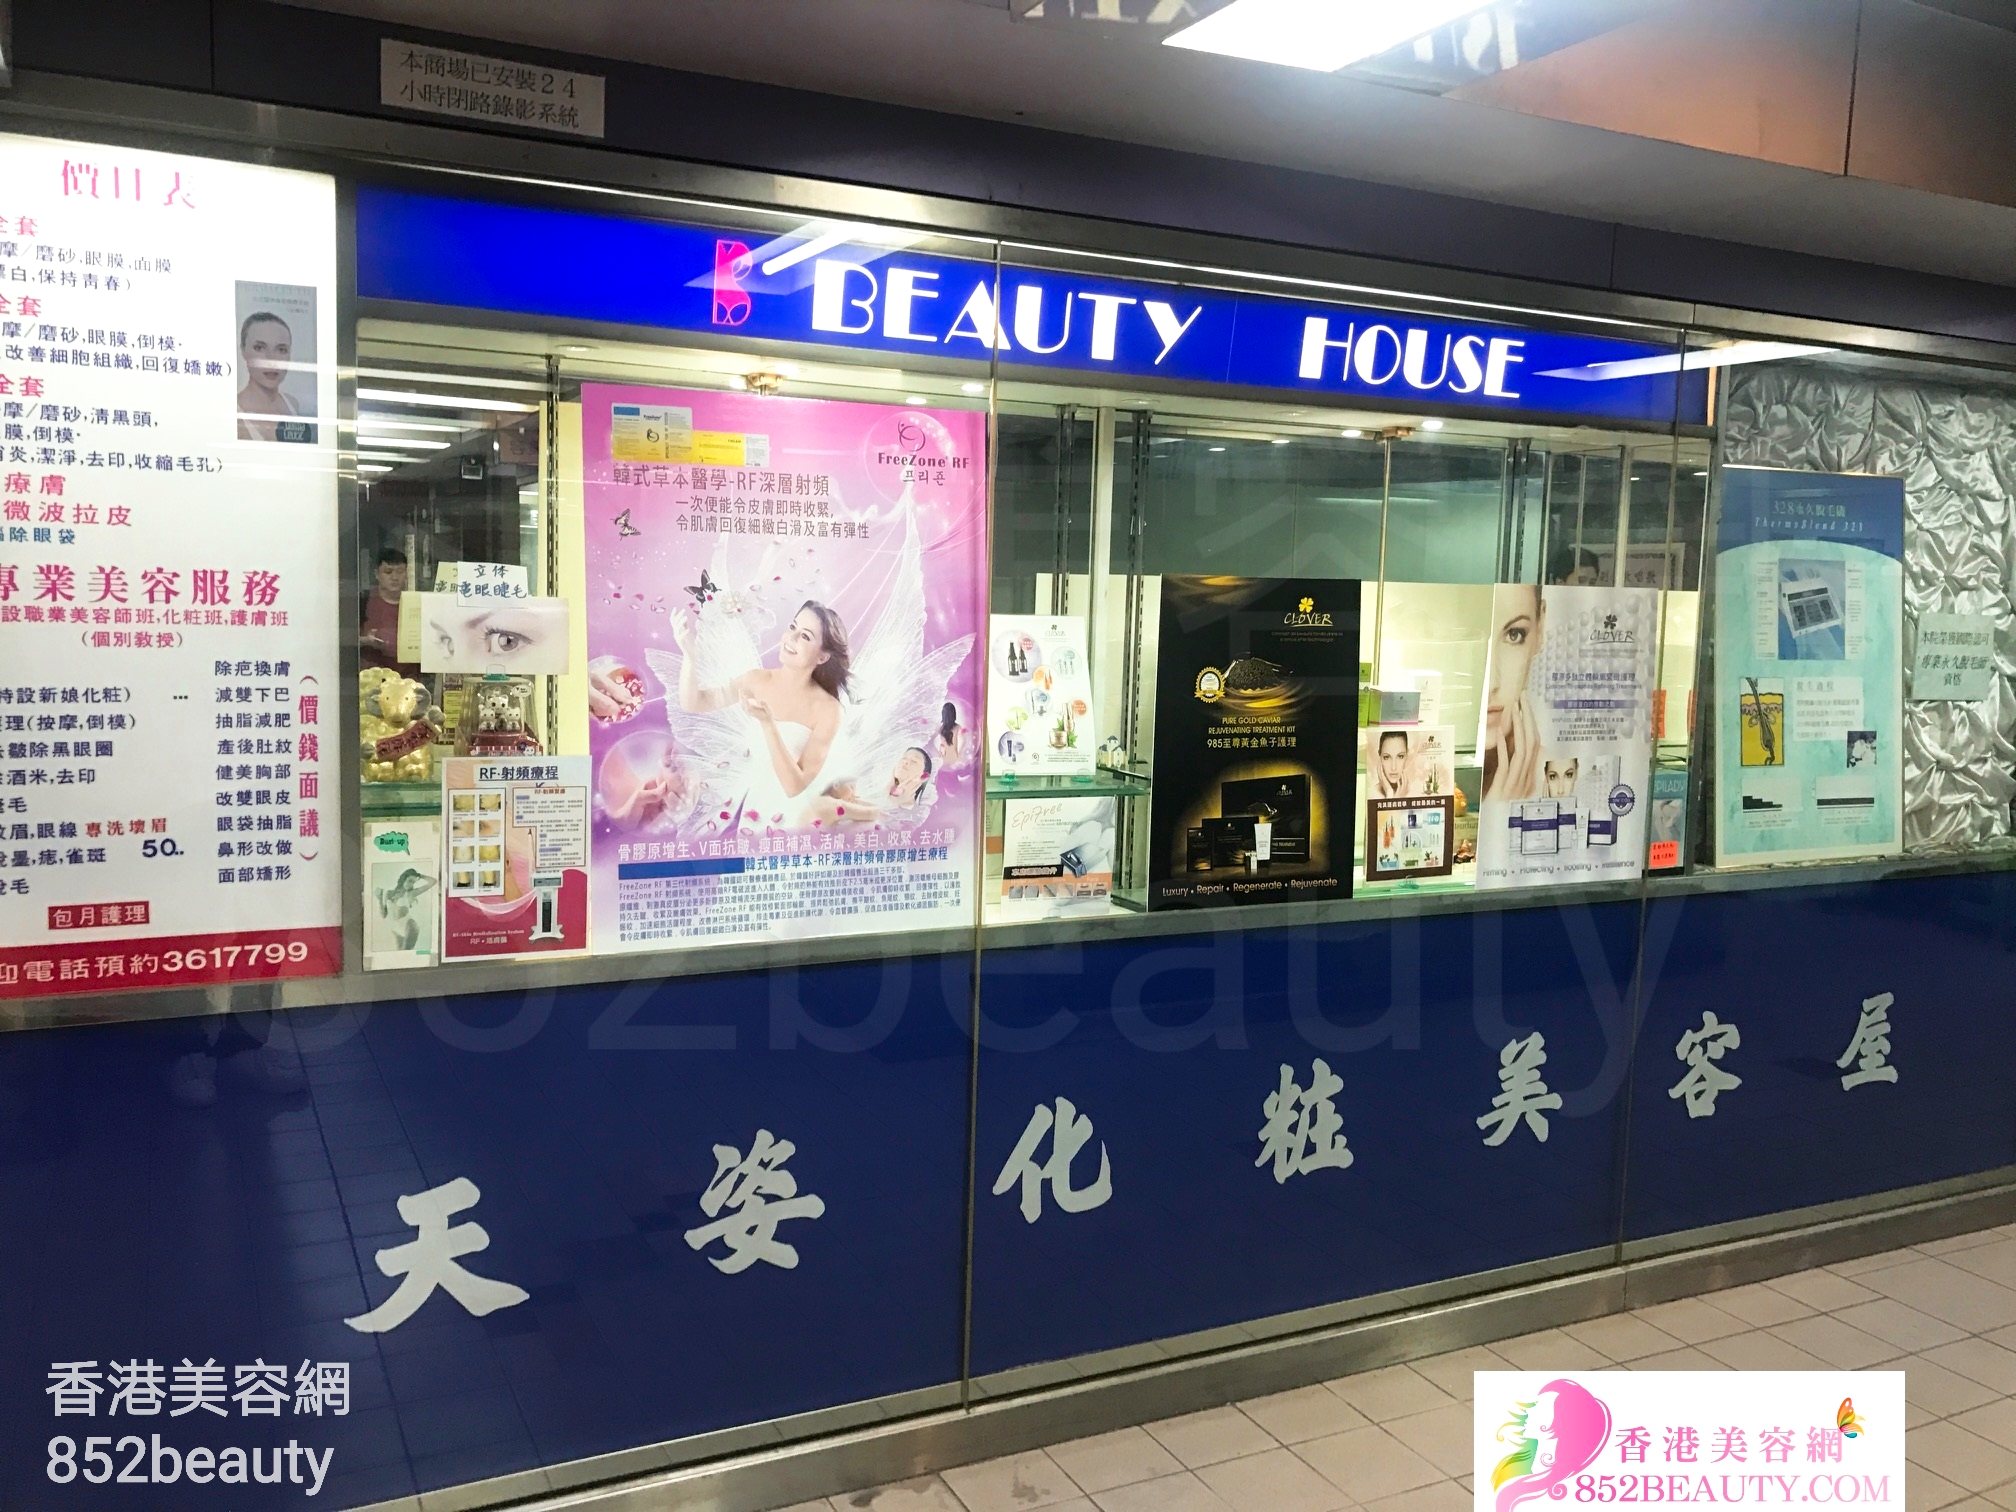 香港美容網 Hong Kong Beauty Salon 美容院 / 美容師: 天姿化粧美容屋